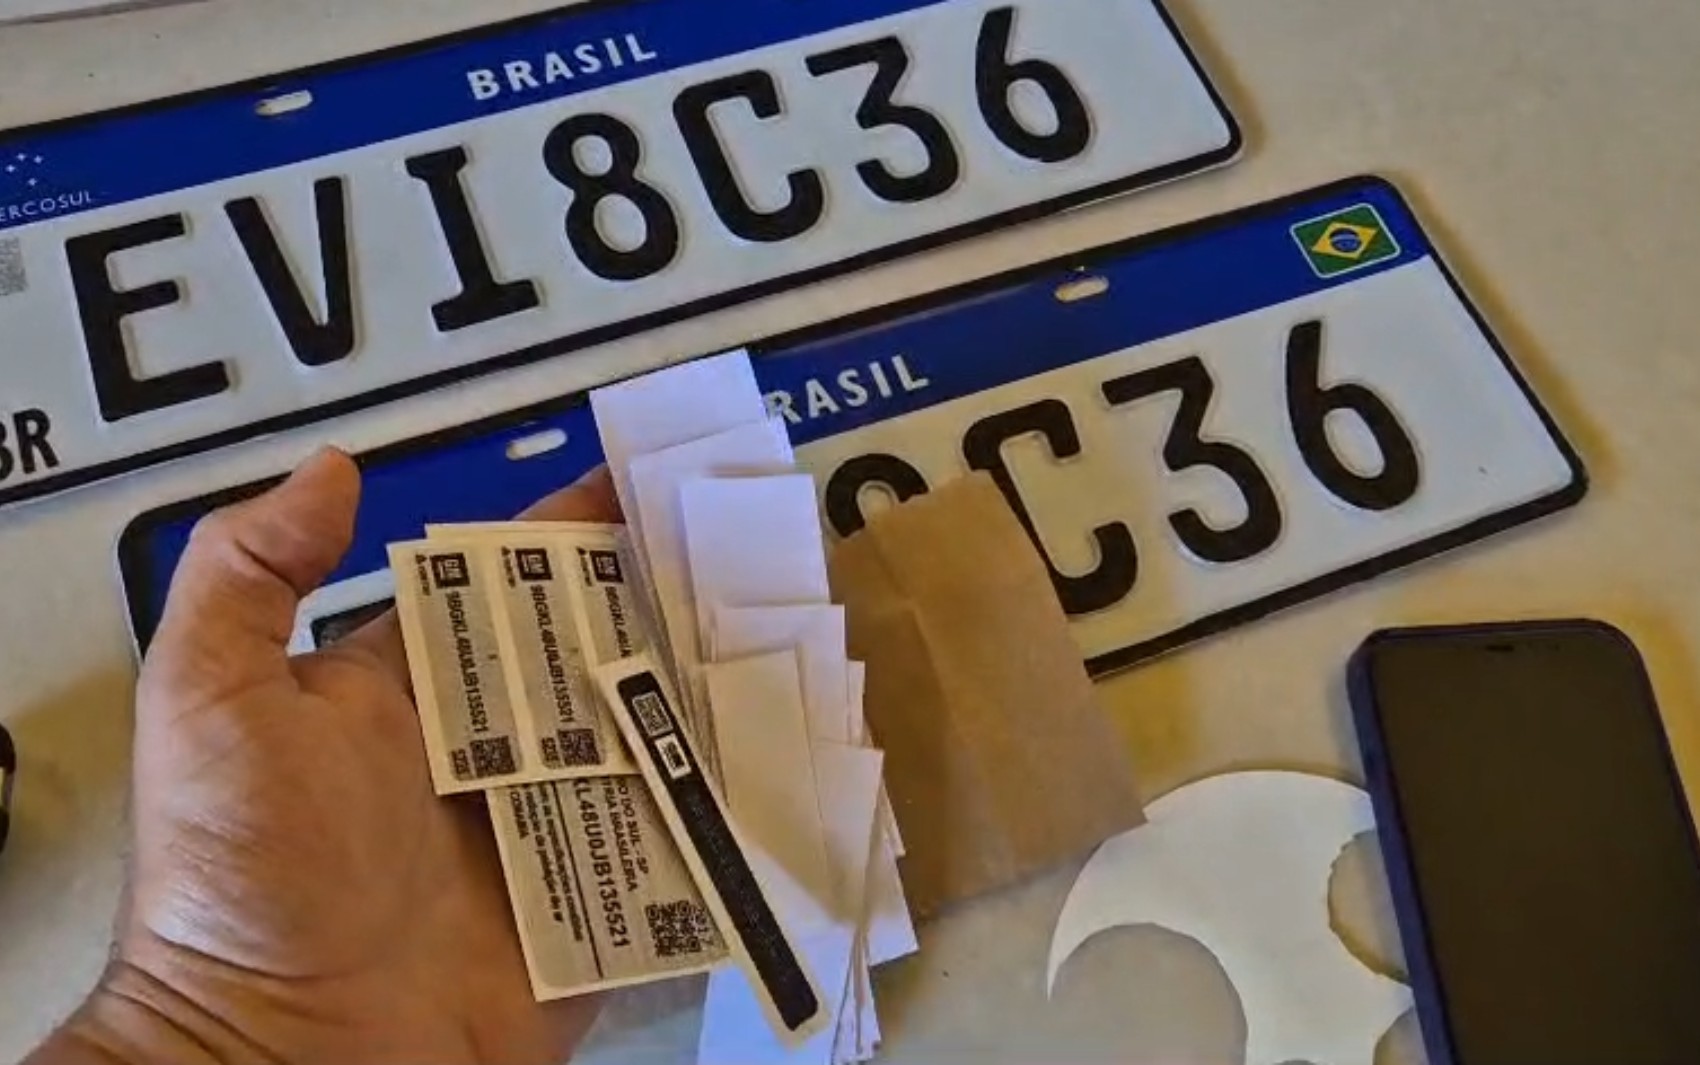 Três homens são presos suspeitos de clonagem de placas de veículos em Ribeirão Preto, SP